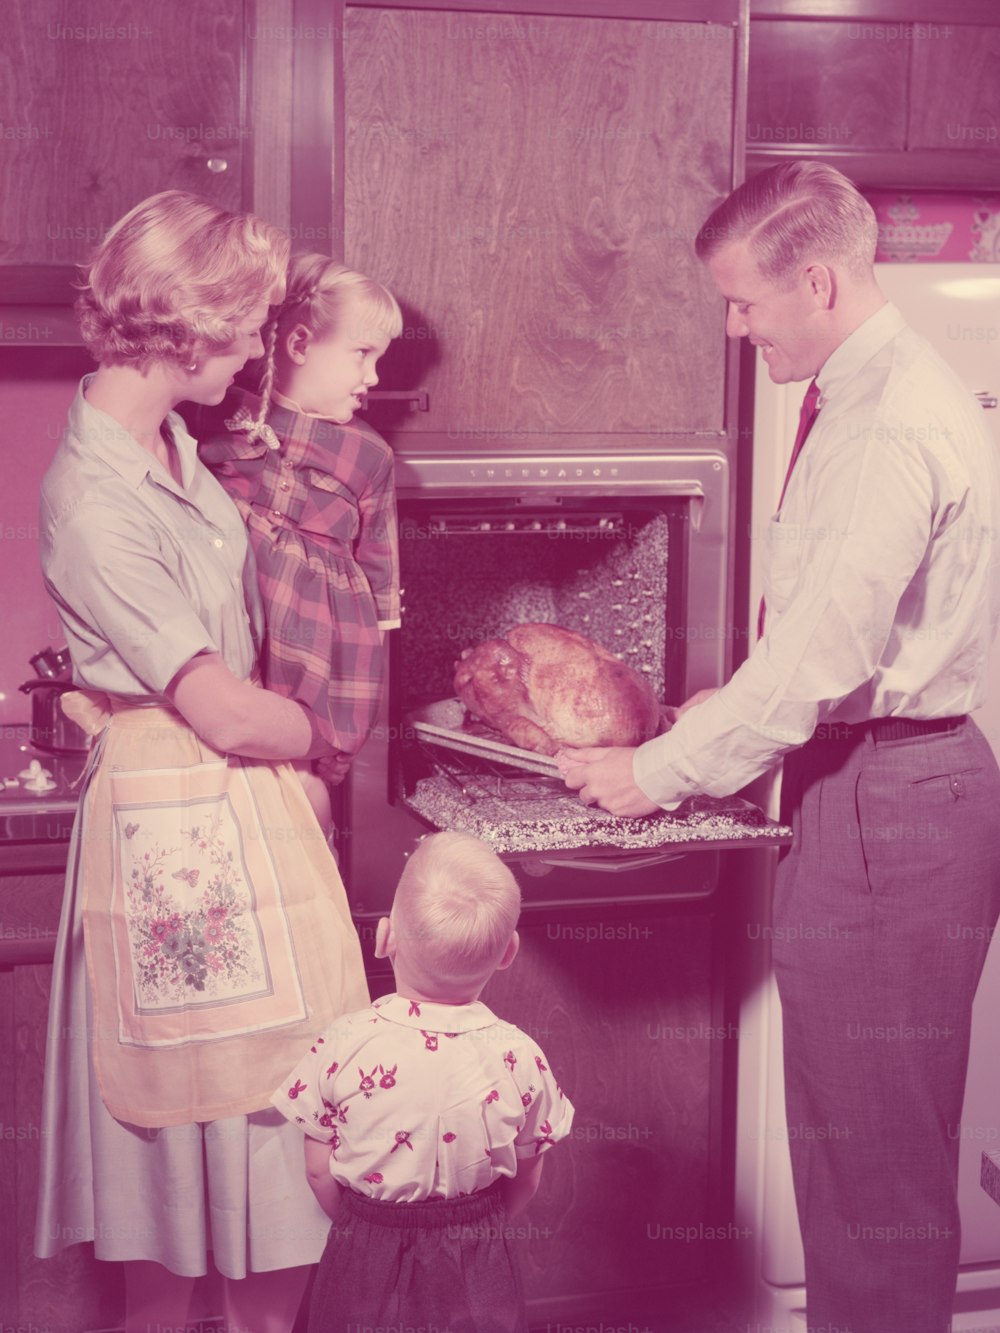 STATI UNITI - 1950 CIRCA: Famiglia in cucina, padre che tira fuori il tacchino arrosto dal forno, madre e figli che guardano.